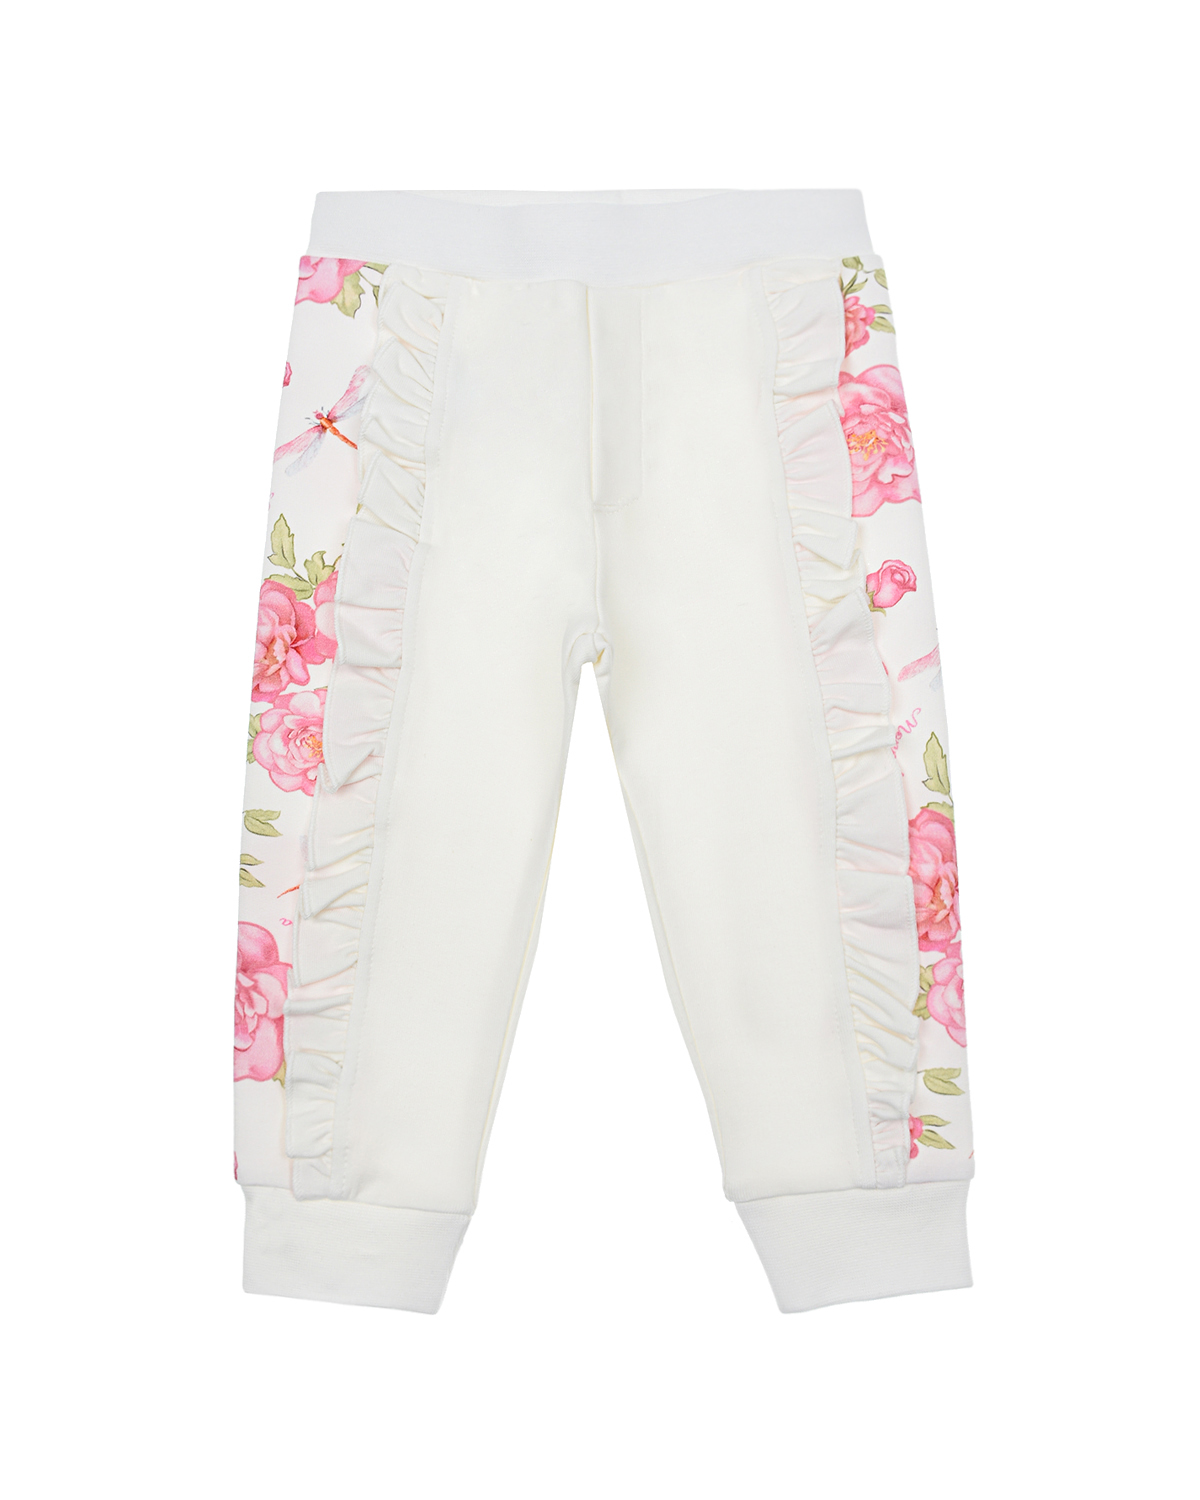 Белые спортивные брюки с принтом "розы" Monnalisa детские, размер 80, цвет белый - фото 1